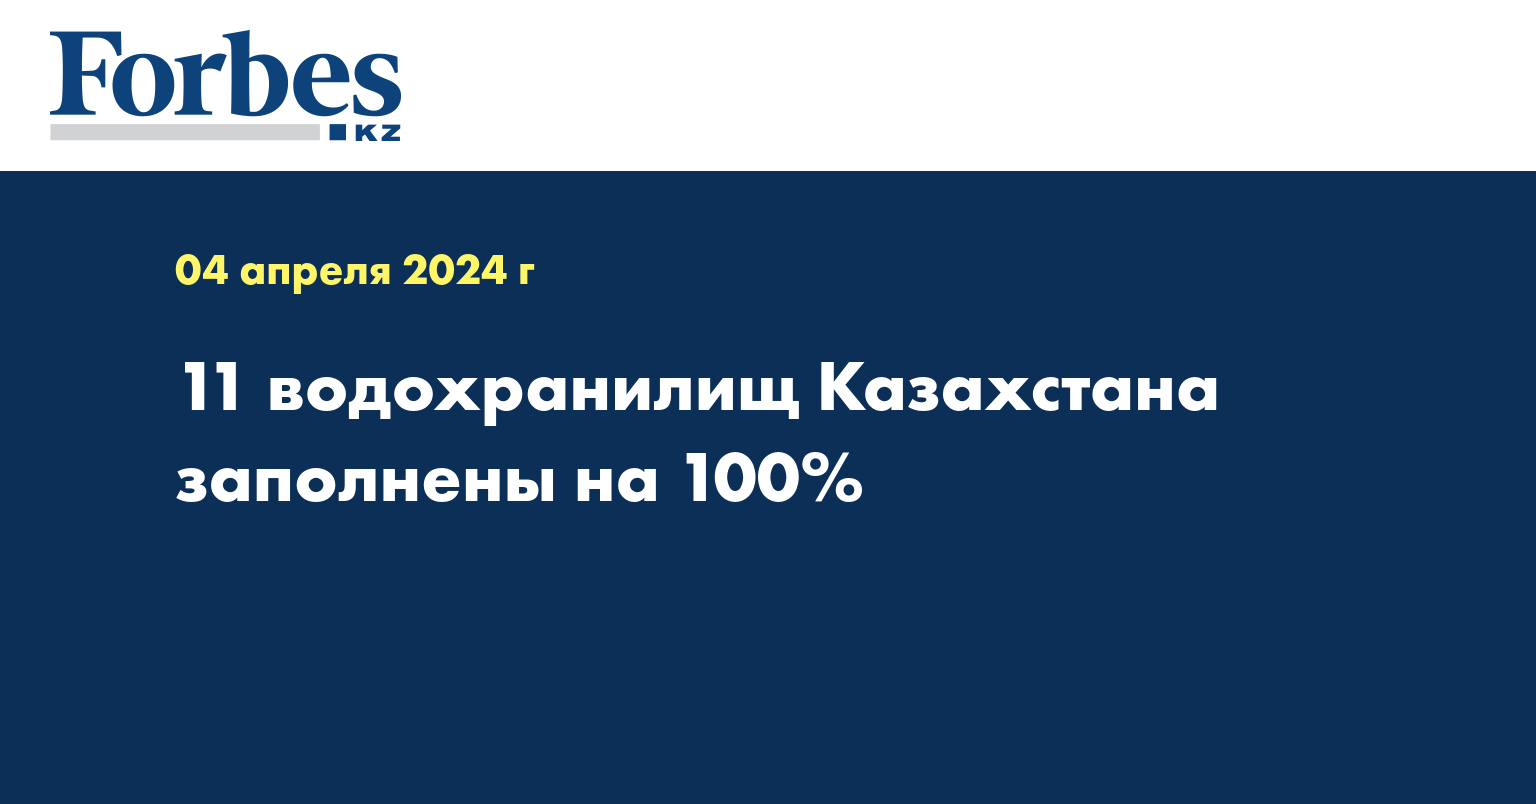 11 водохранилищ Казахстана заполнены на 100%